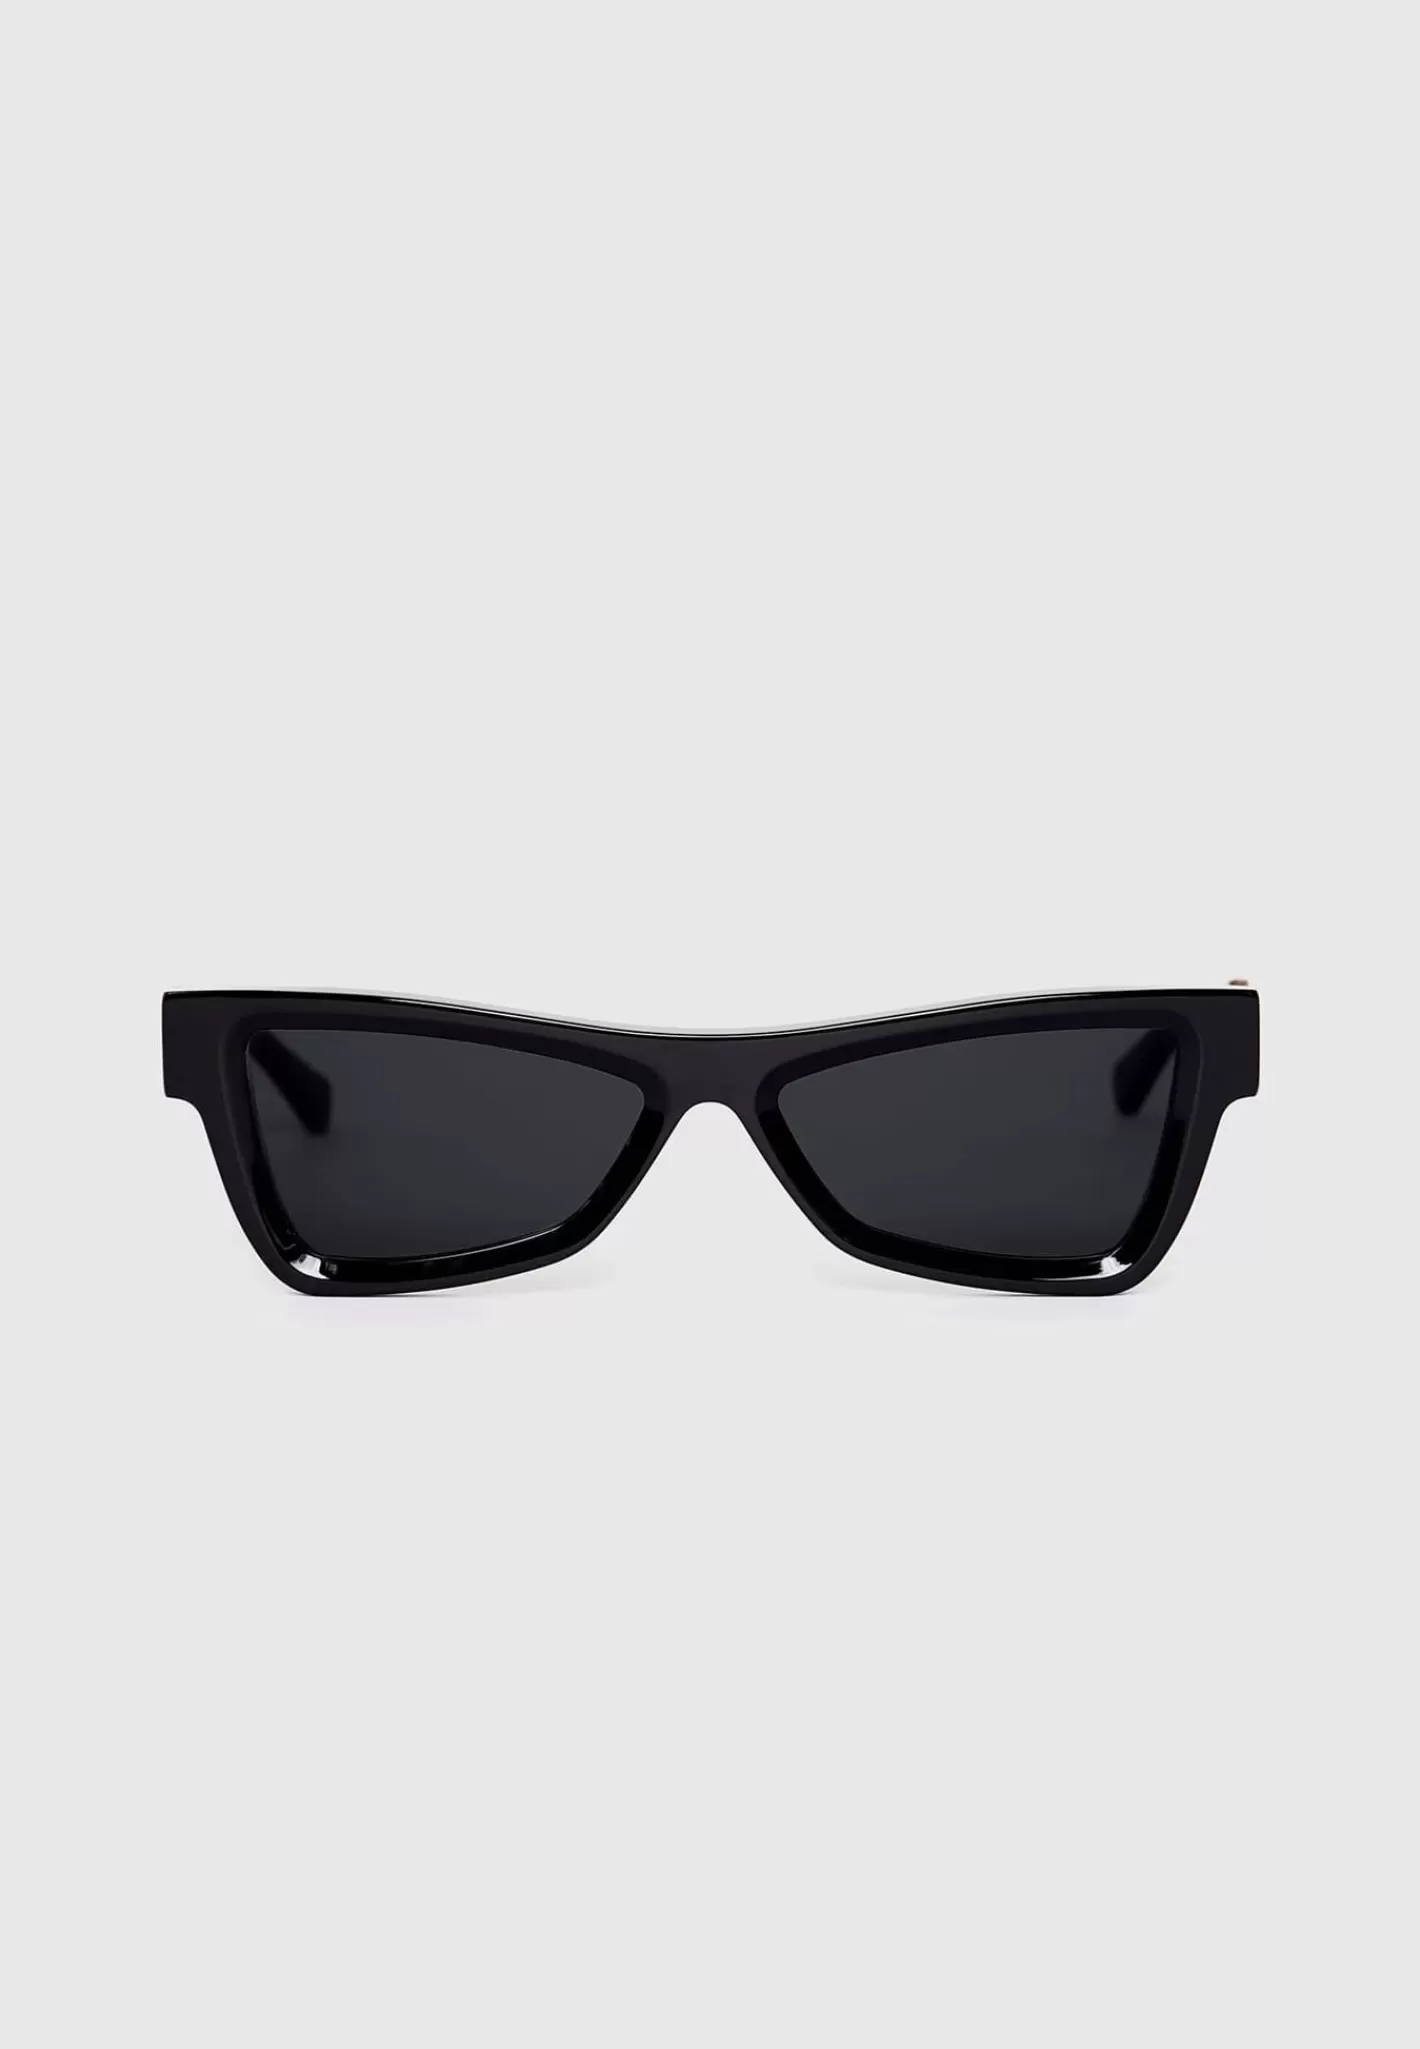 Corsica Sunglasses - Gloss Black-Manière De Voir Hot